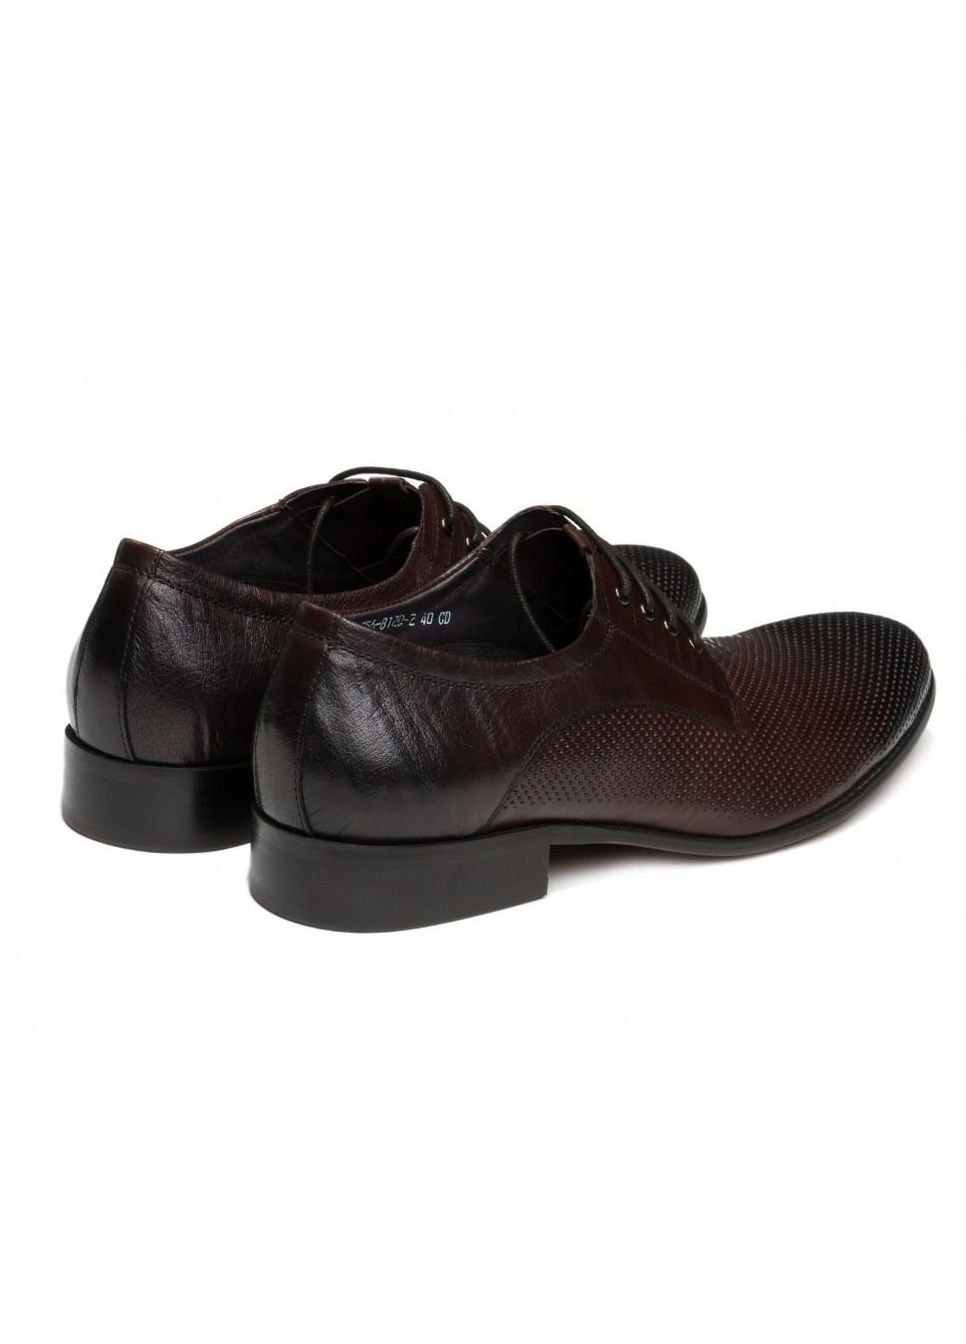 Коричневые туфли 7152129 39 цвет коричневый Carlo Delari